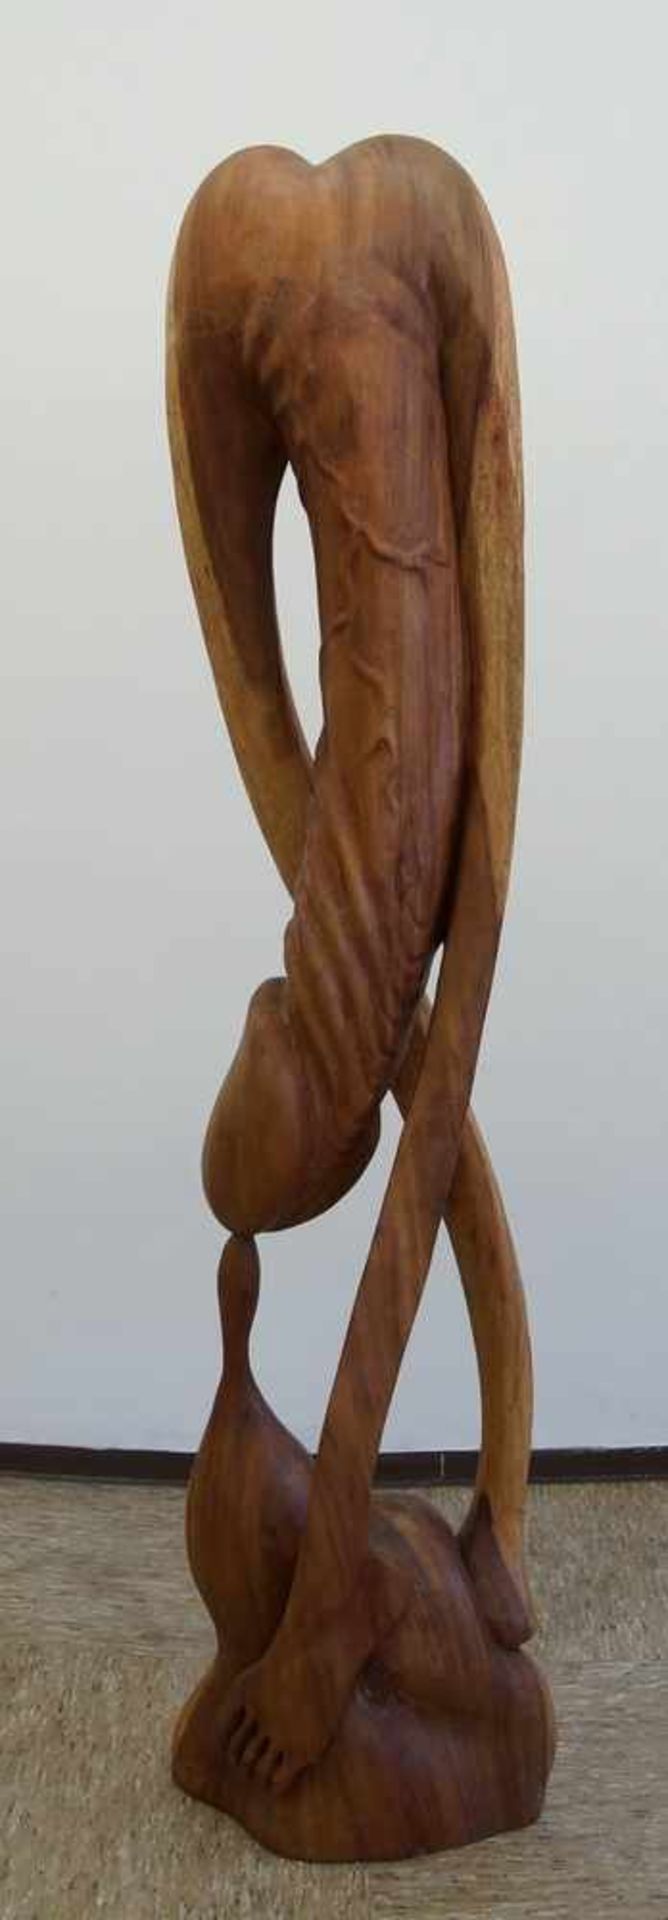 Grosser, in Holz geschnitzter Phallus in abstrakter Darstellung, H 170 cm - Bild 2 aus 6